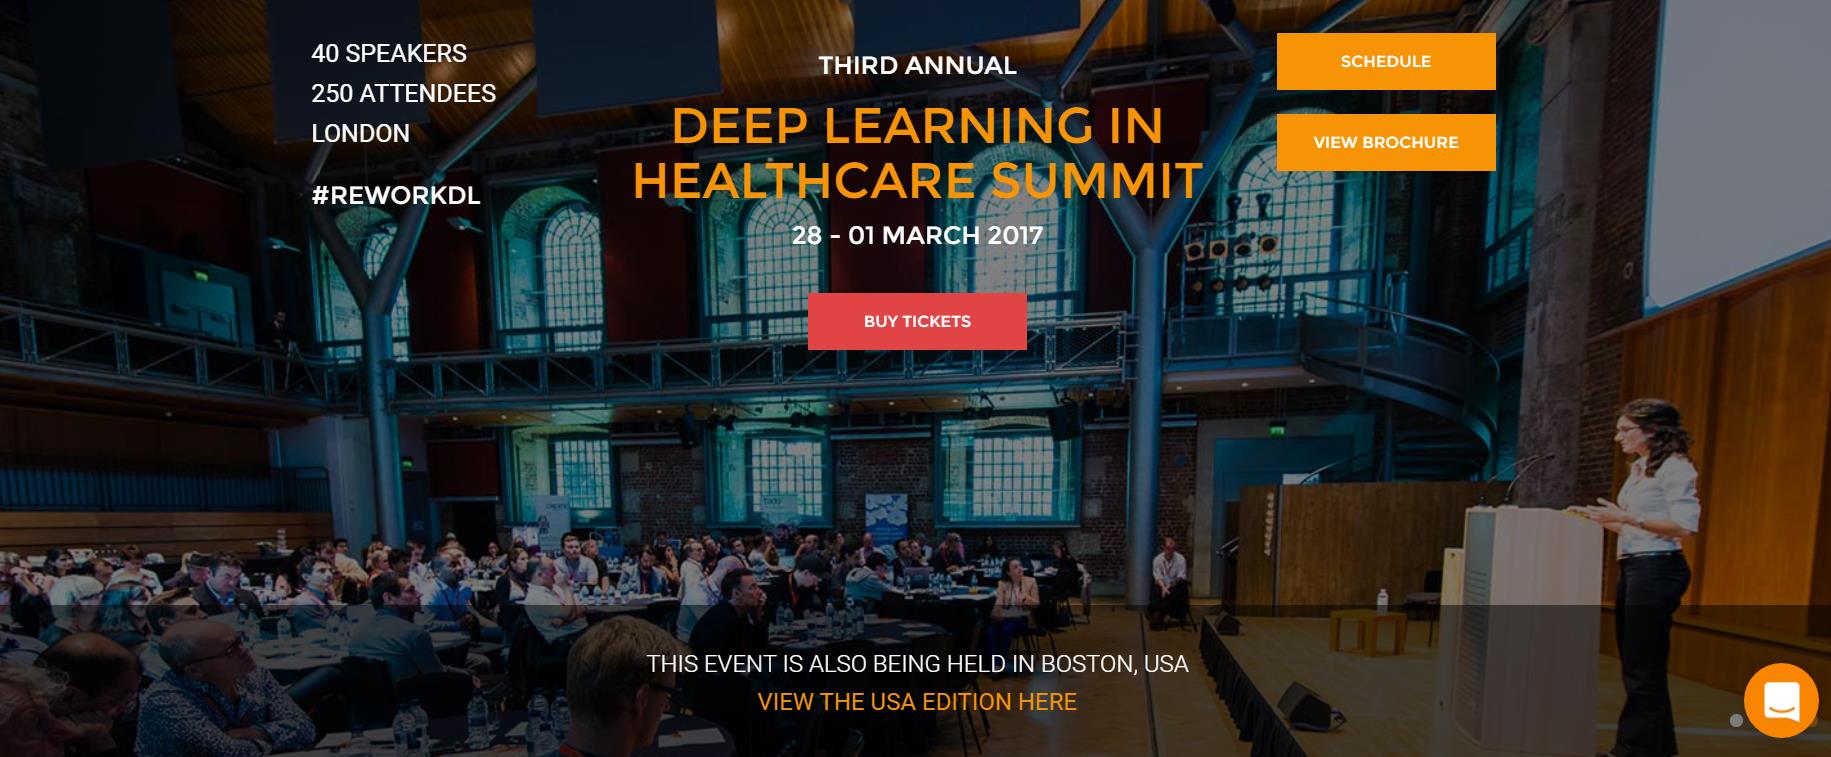 В Лондоне, с 28 февраля по 01 марта 2017 года, пройдет третья конференция «DEEP LEARNING IN HEALTH CARE SUMMIT LONDON».